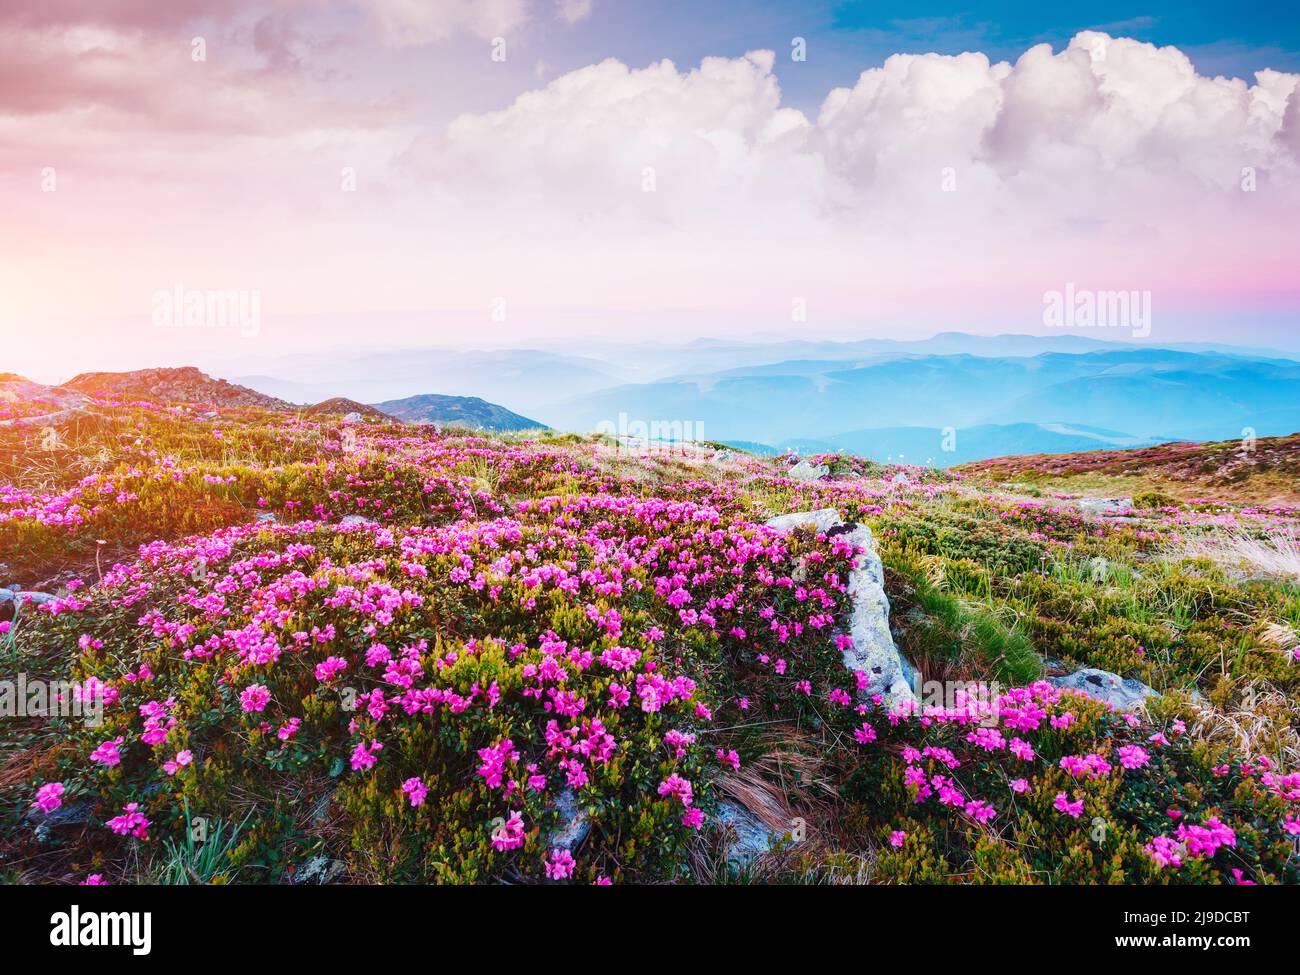 Wunderschöne Szene der Alpine Valley im Sonnenlicht. Schönen Tag. Ort Karpaten Ukraine, Europa. Wunderbares Bild von Tapeten. Ausgezeichnete o Stockfoto